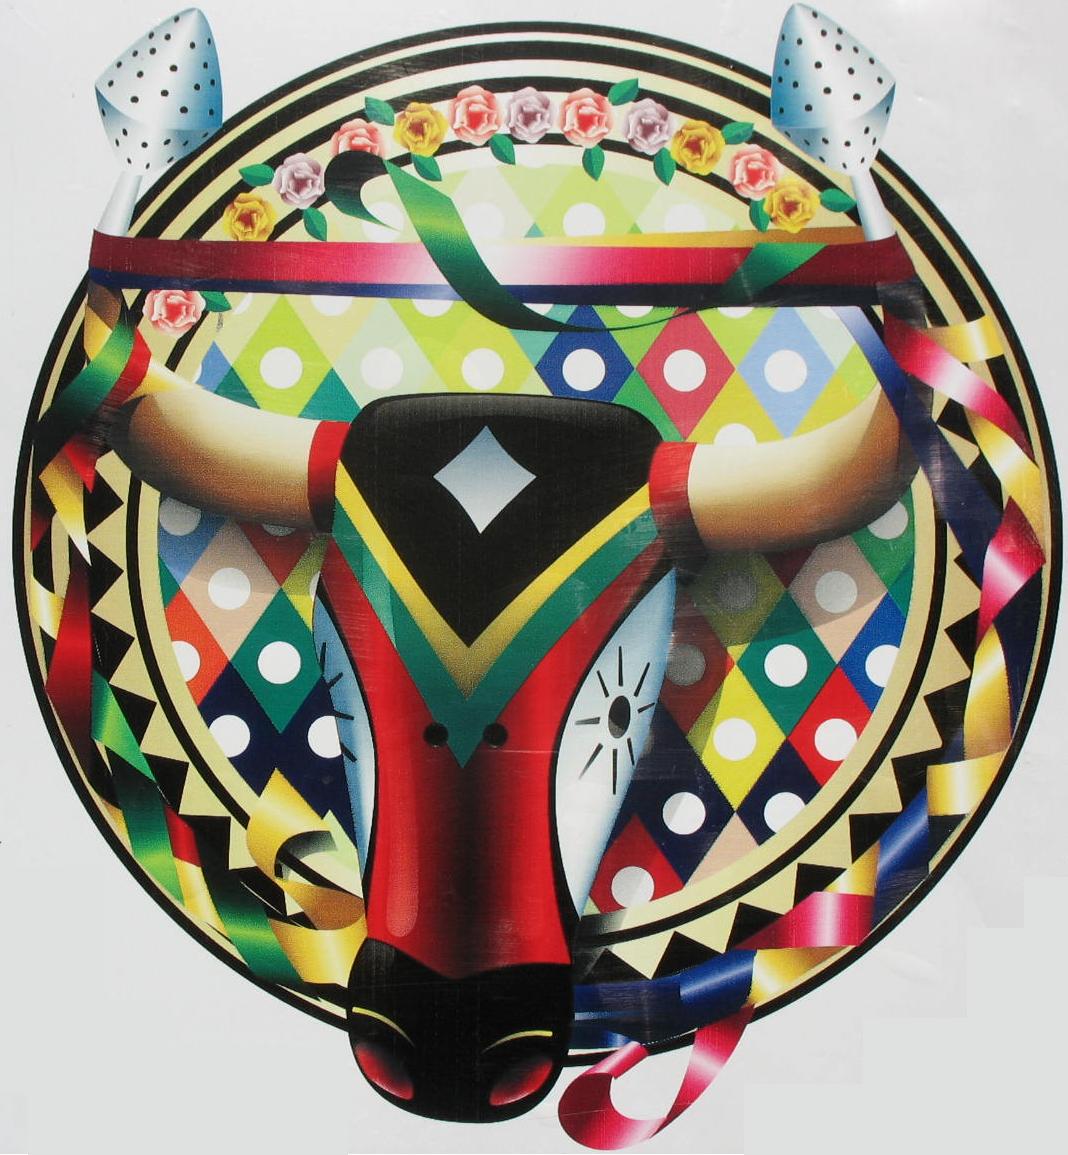 Toro del carnaval de barranquilla - Imagui